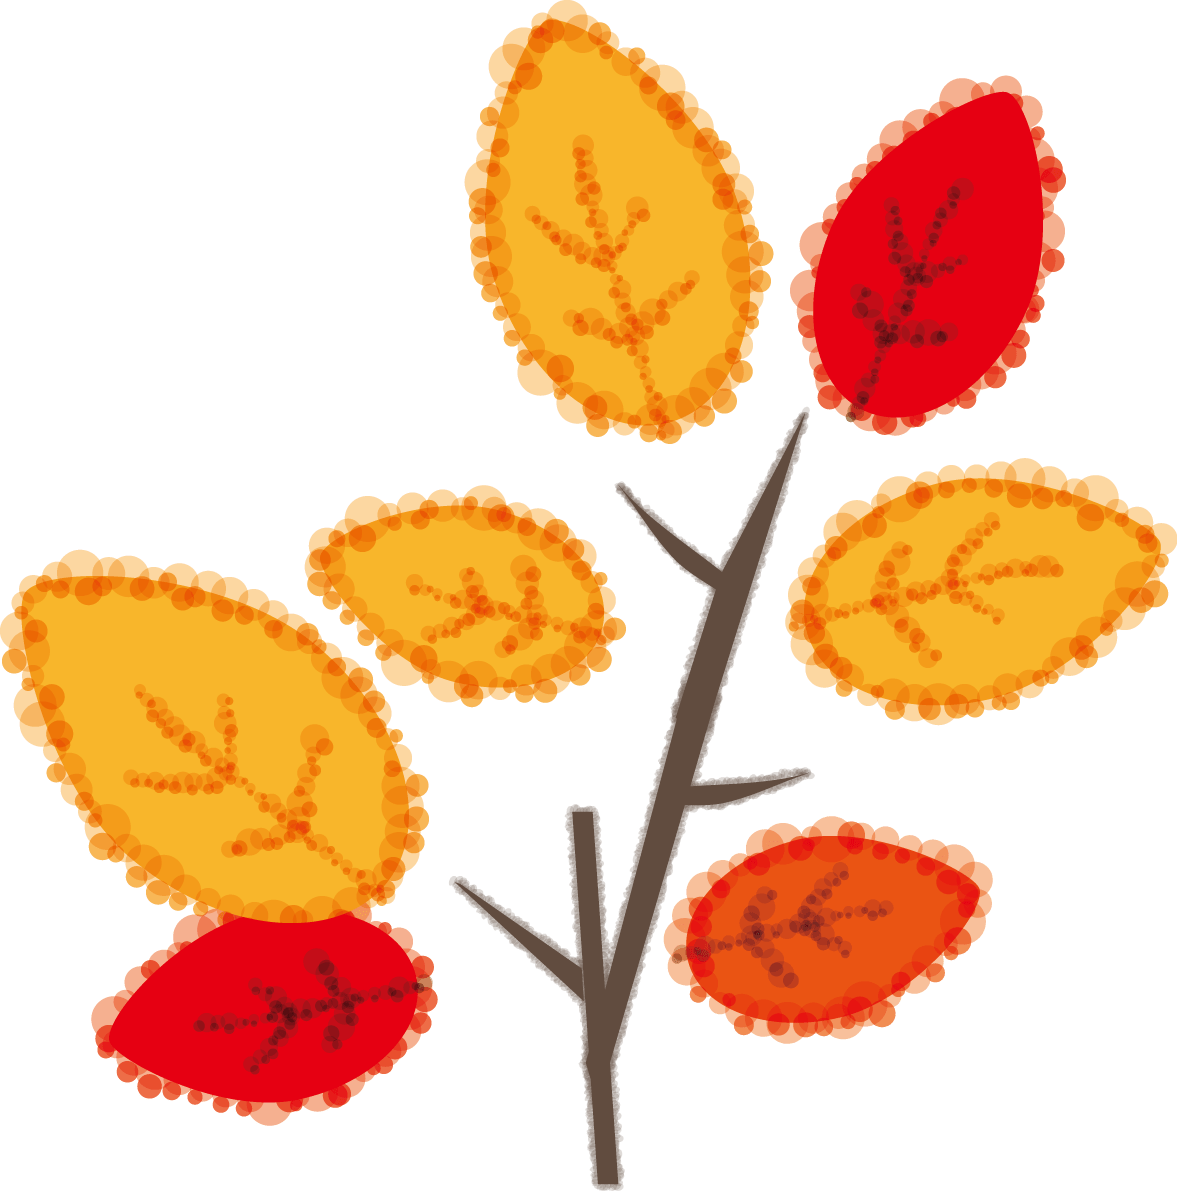 かわいい秋の紅葉(もみじ)した枝と葉